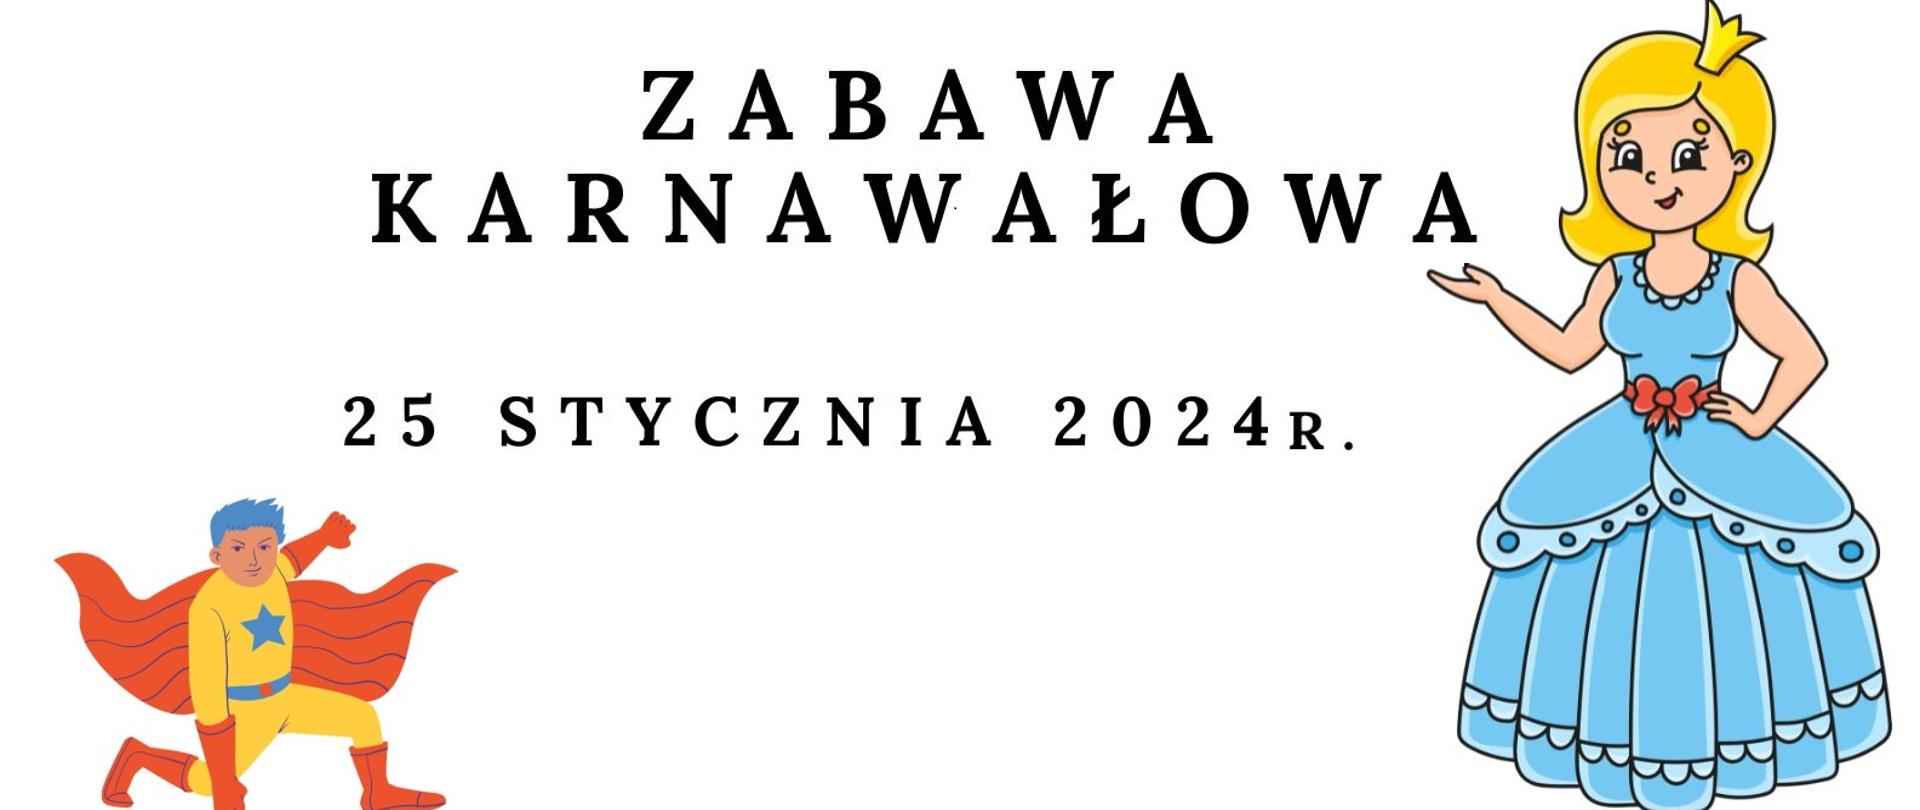 Baner z kolorowymi grafikami postaci z bajek z białym tłem. Na środku napis "Zabawa Karnawałowa 25 stycznia 2024r."